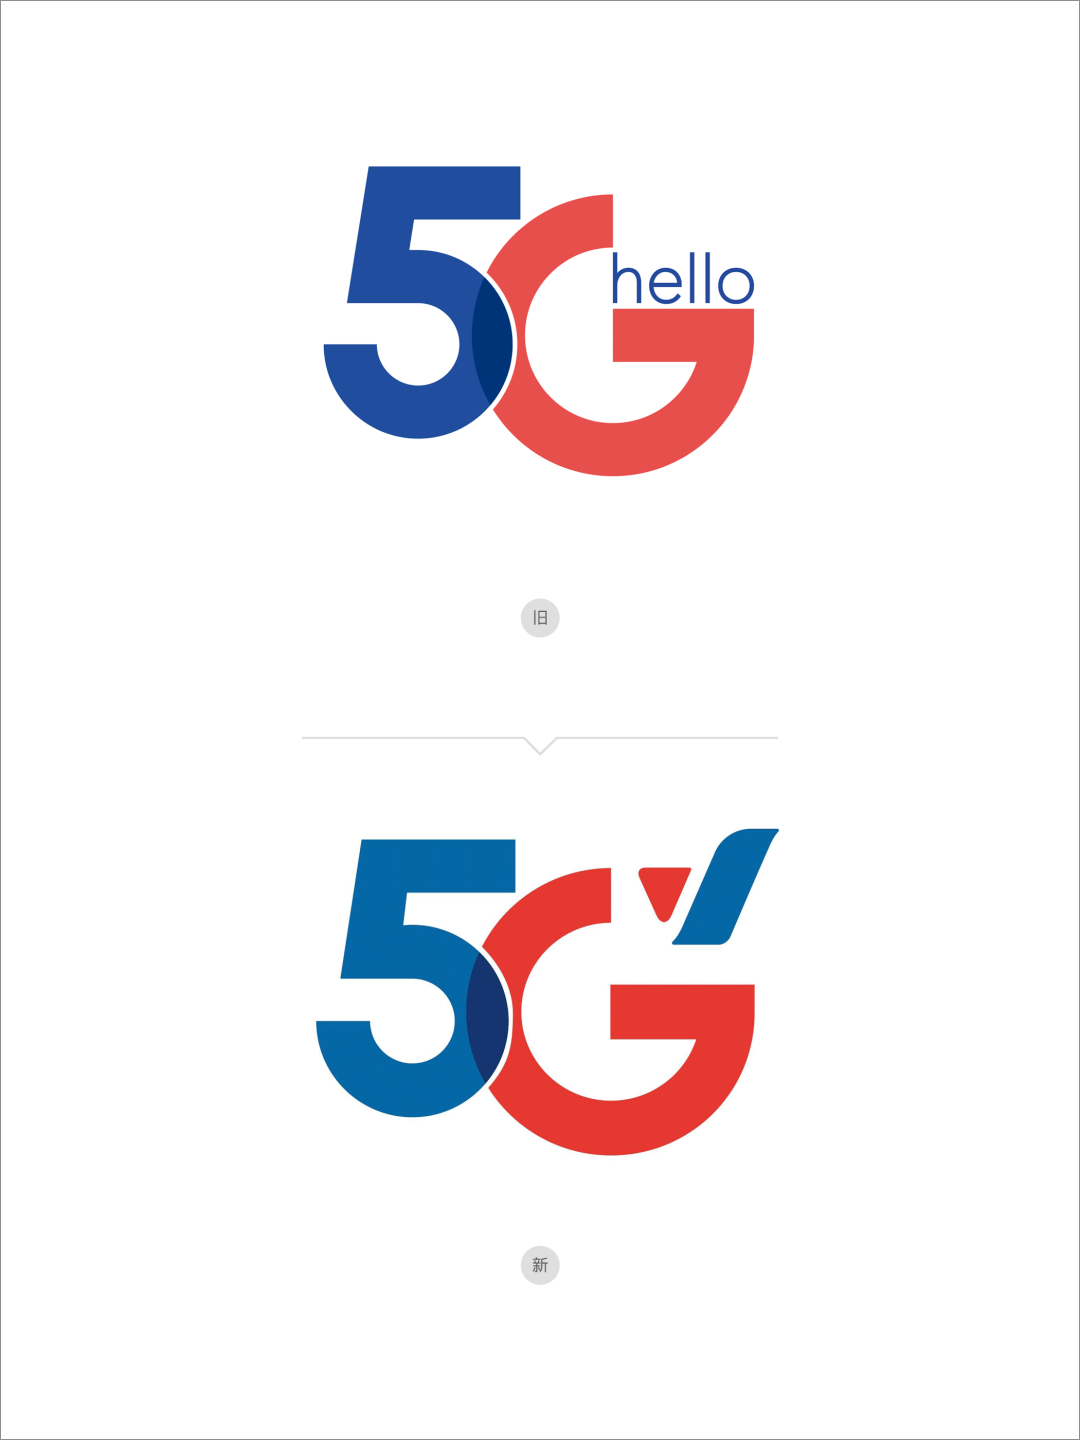 中国电信5G新旧LOGO对比